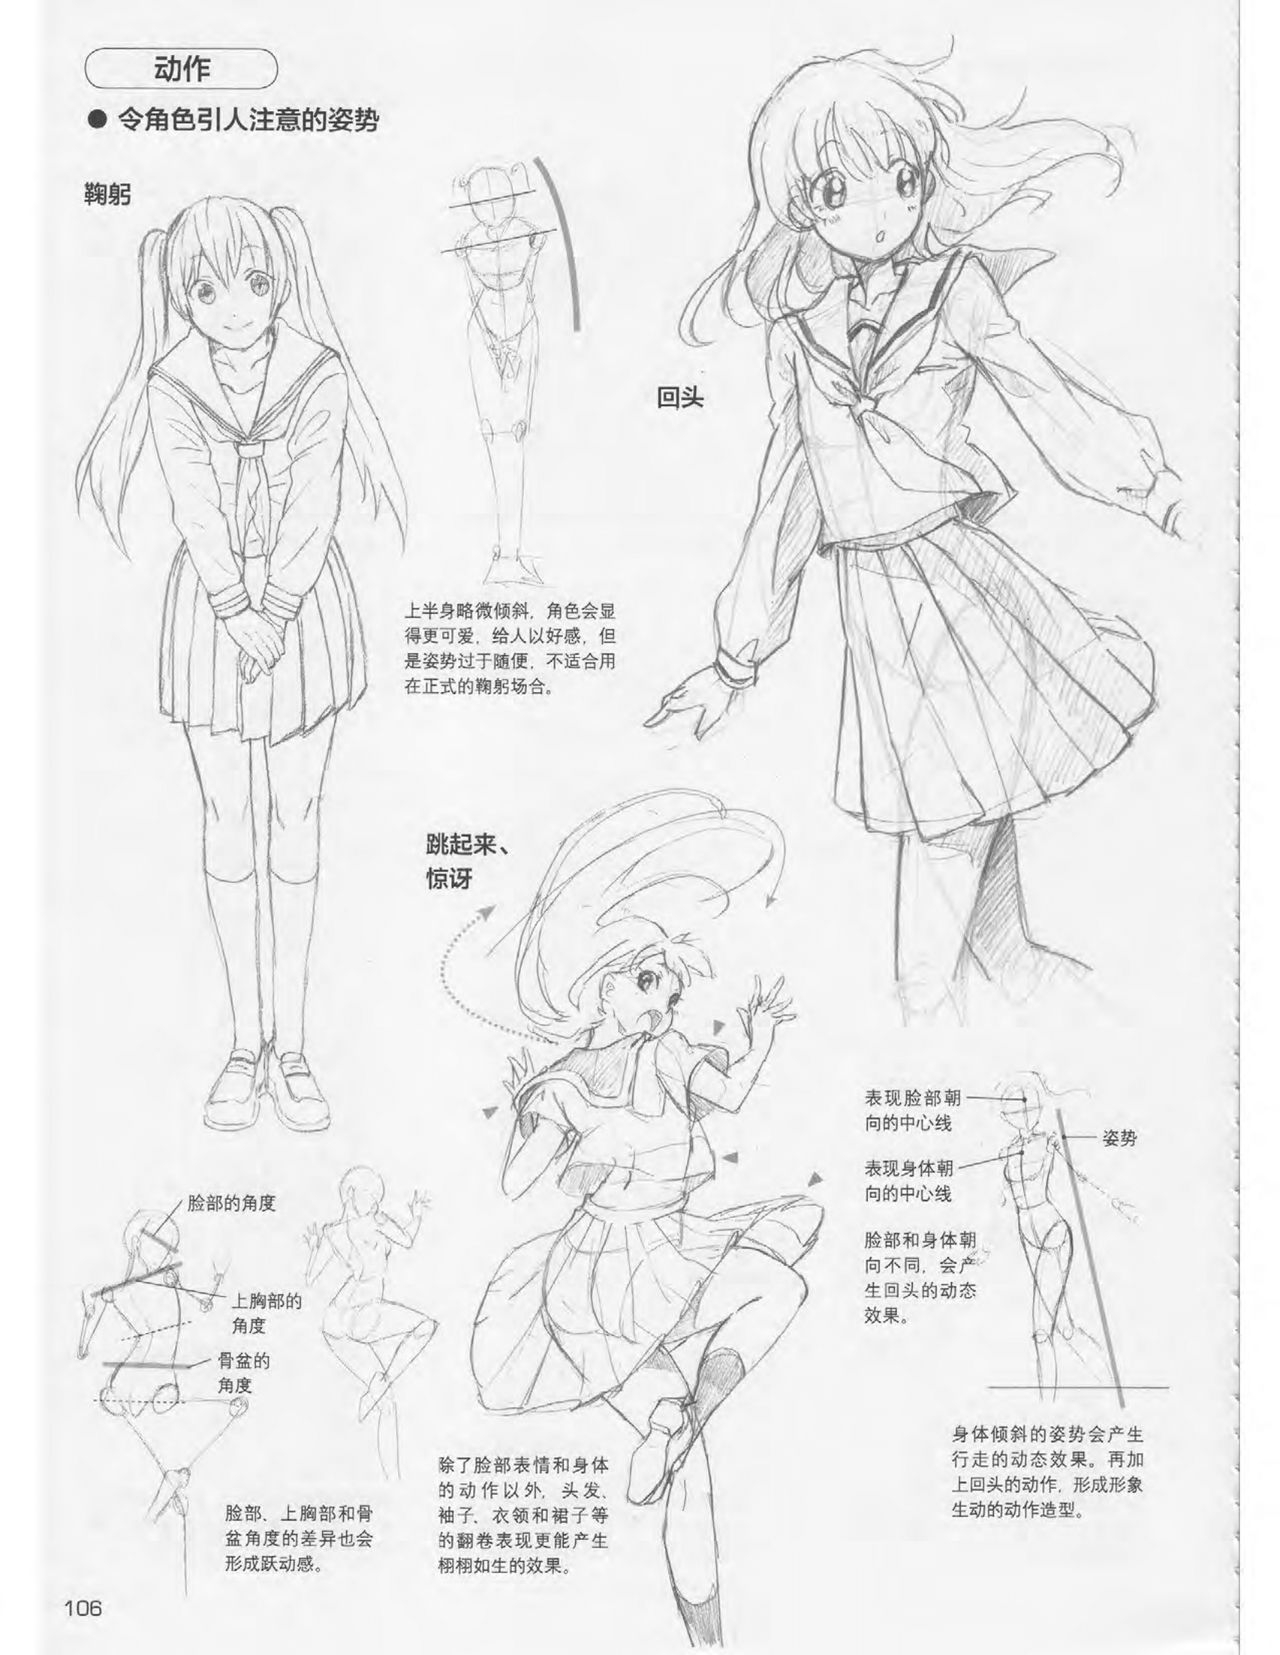 Japanese Manga Master Lecture 3: Lin Akira and Kakumaru Maru Talk About Glamorous Character Modeling 106